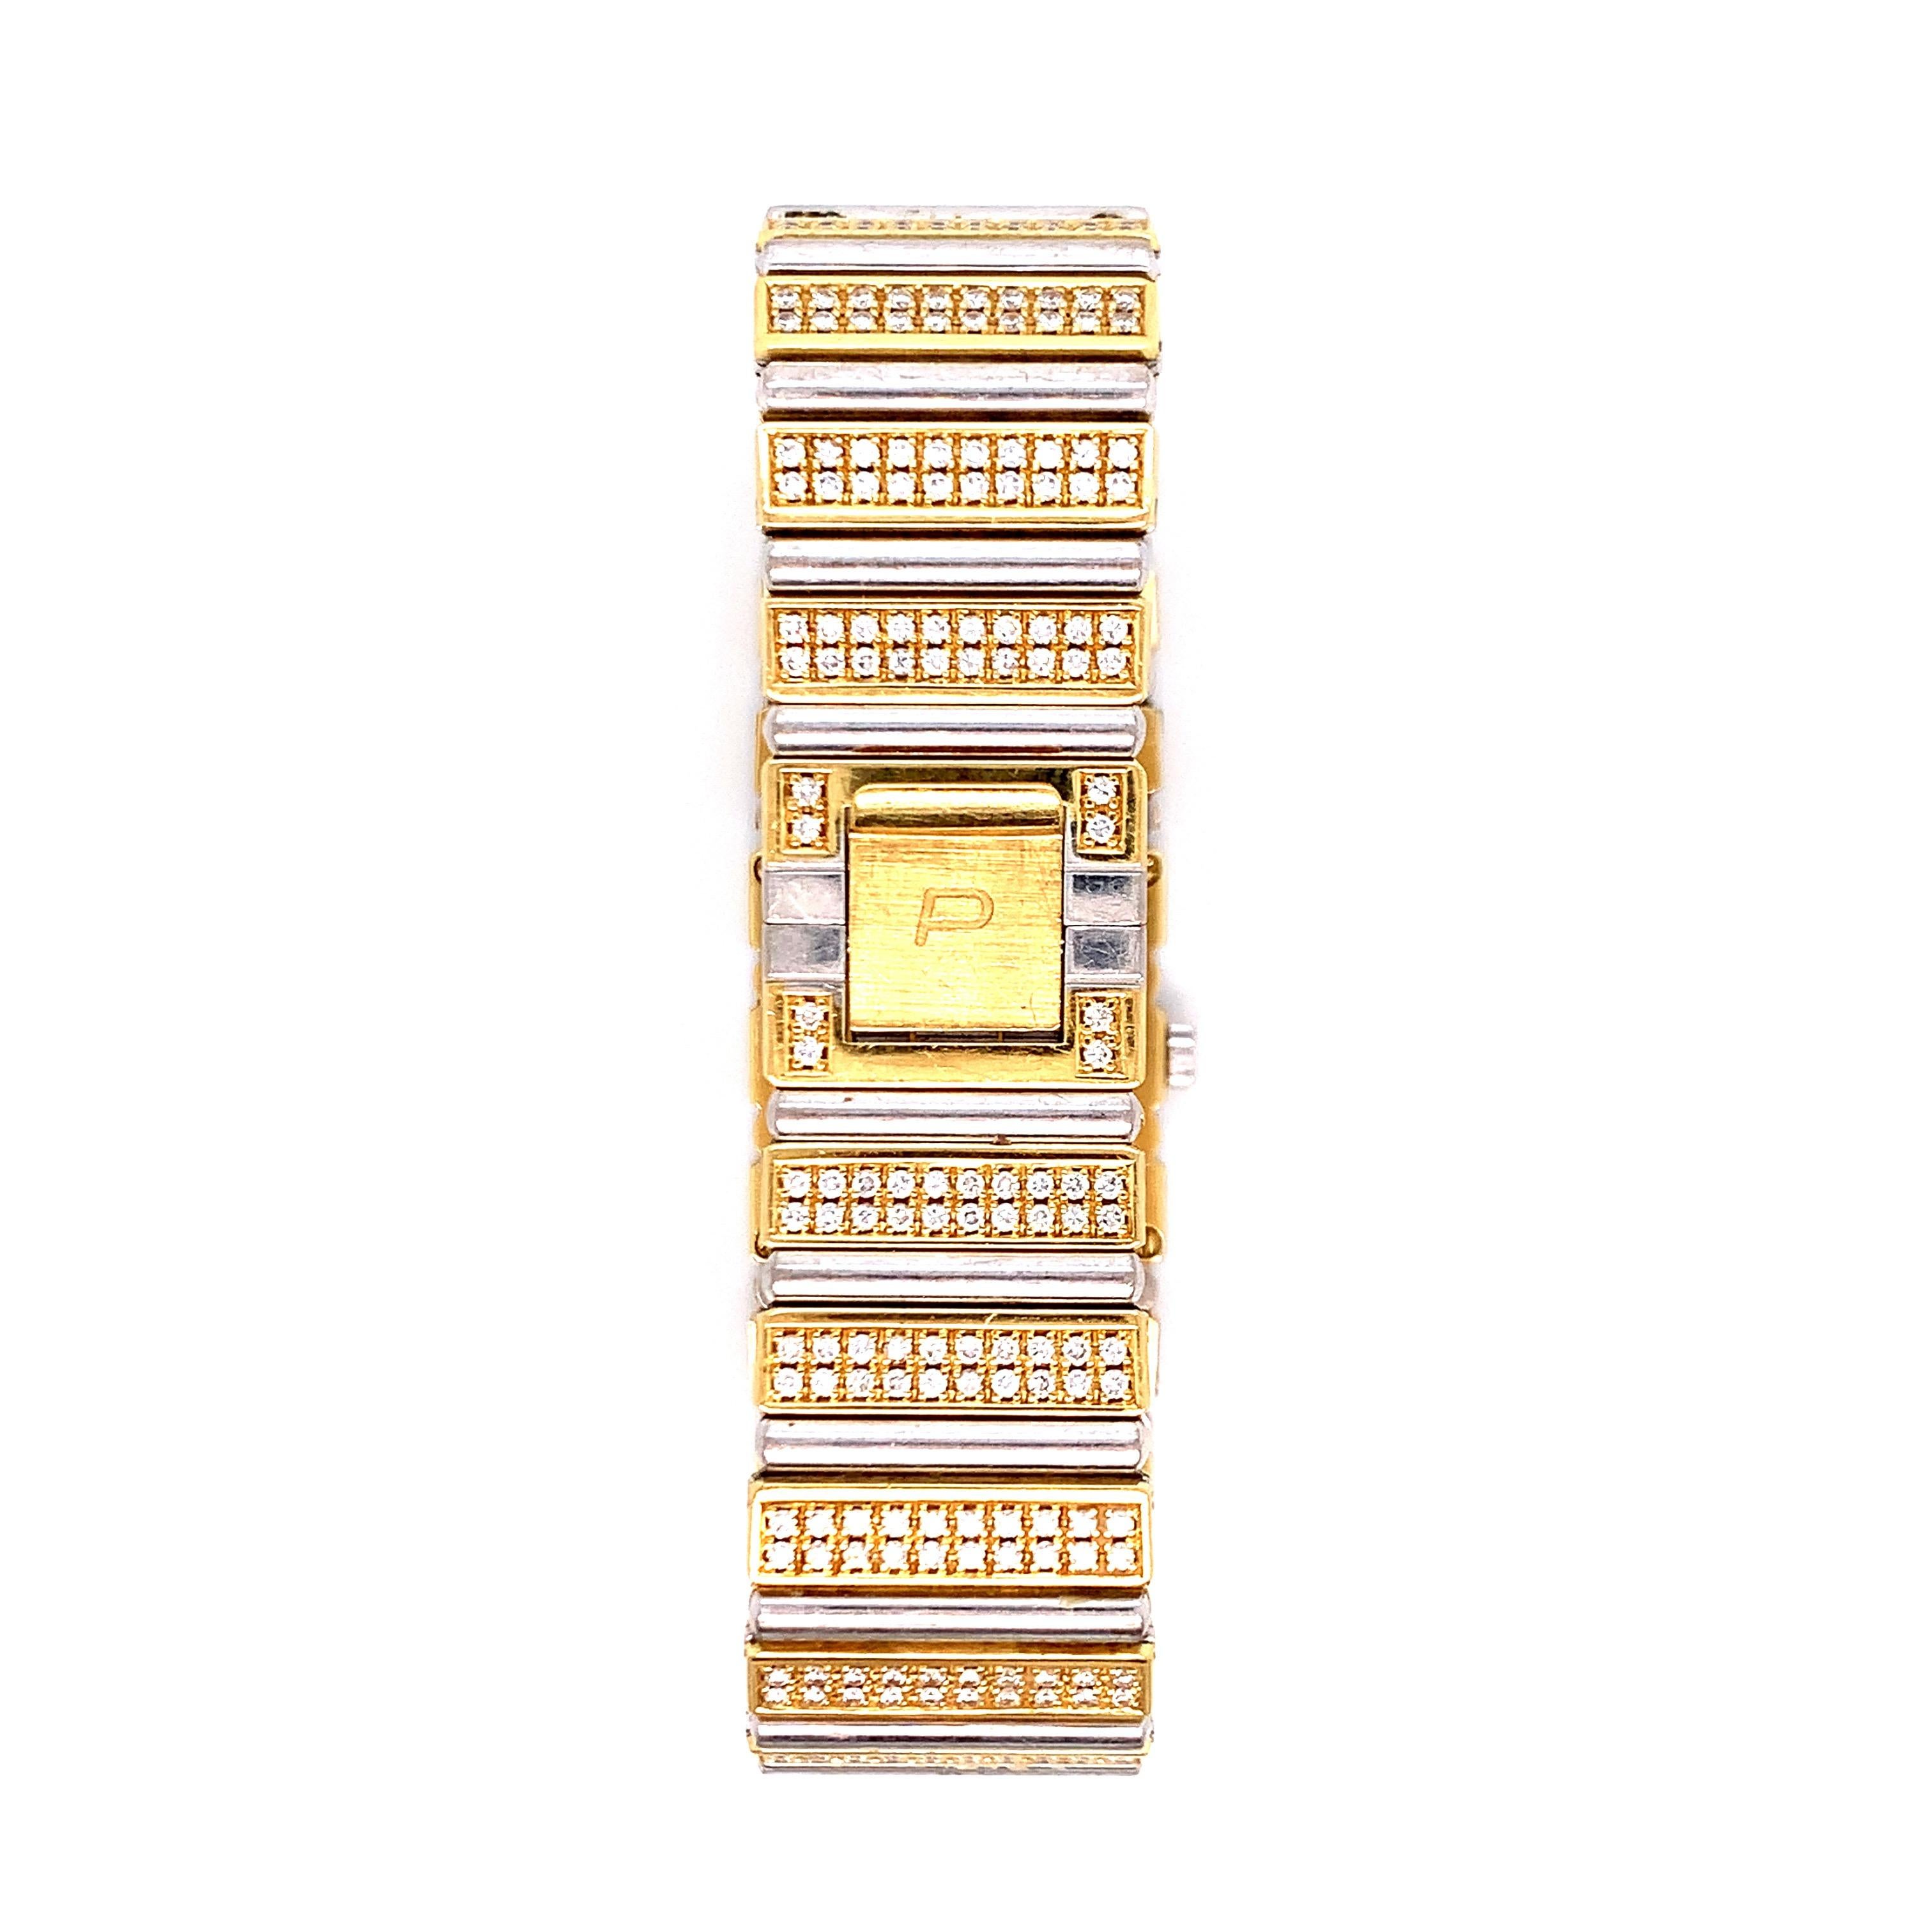 Montre-bracelet Piaget 'Polo' en or bicolore (jaune et blanc) 18 carats et diamants. Les diamants pèsent environ 6 carats et sont présents sur l'ensemble de la montre, y compris sur le cadran carré en émail noir. Le mouvement est à quartz. La